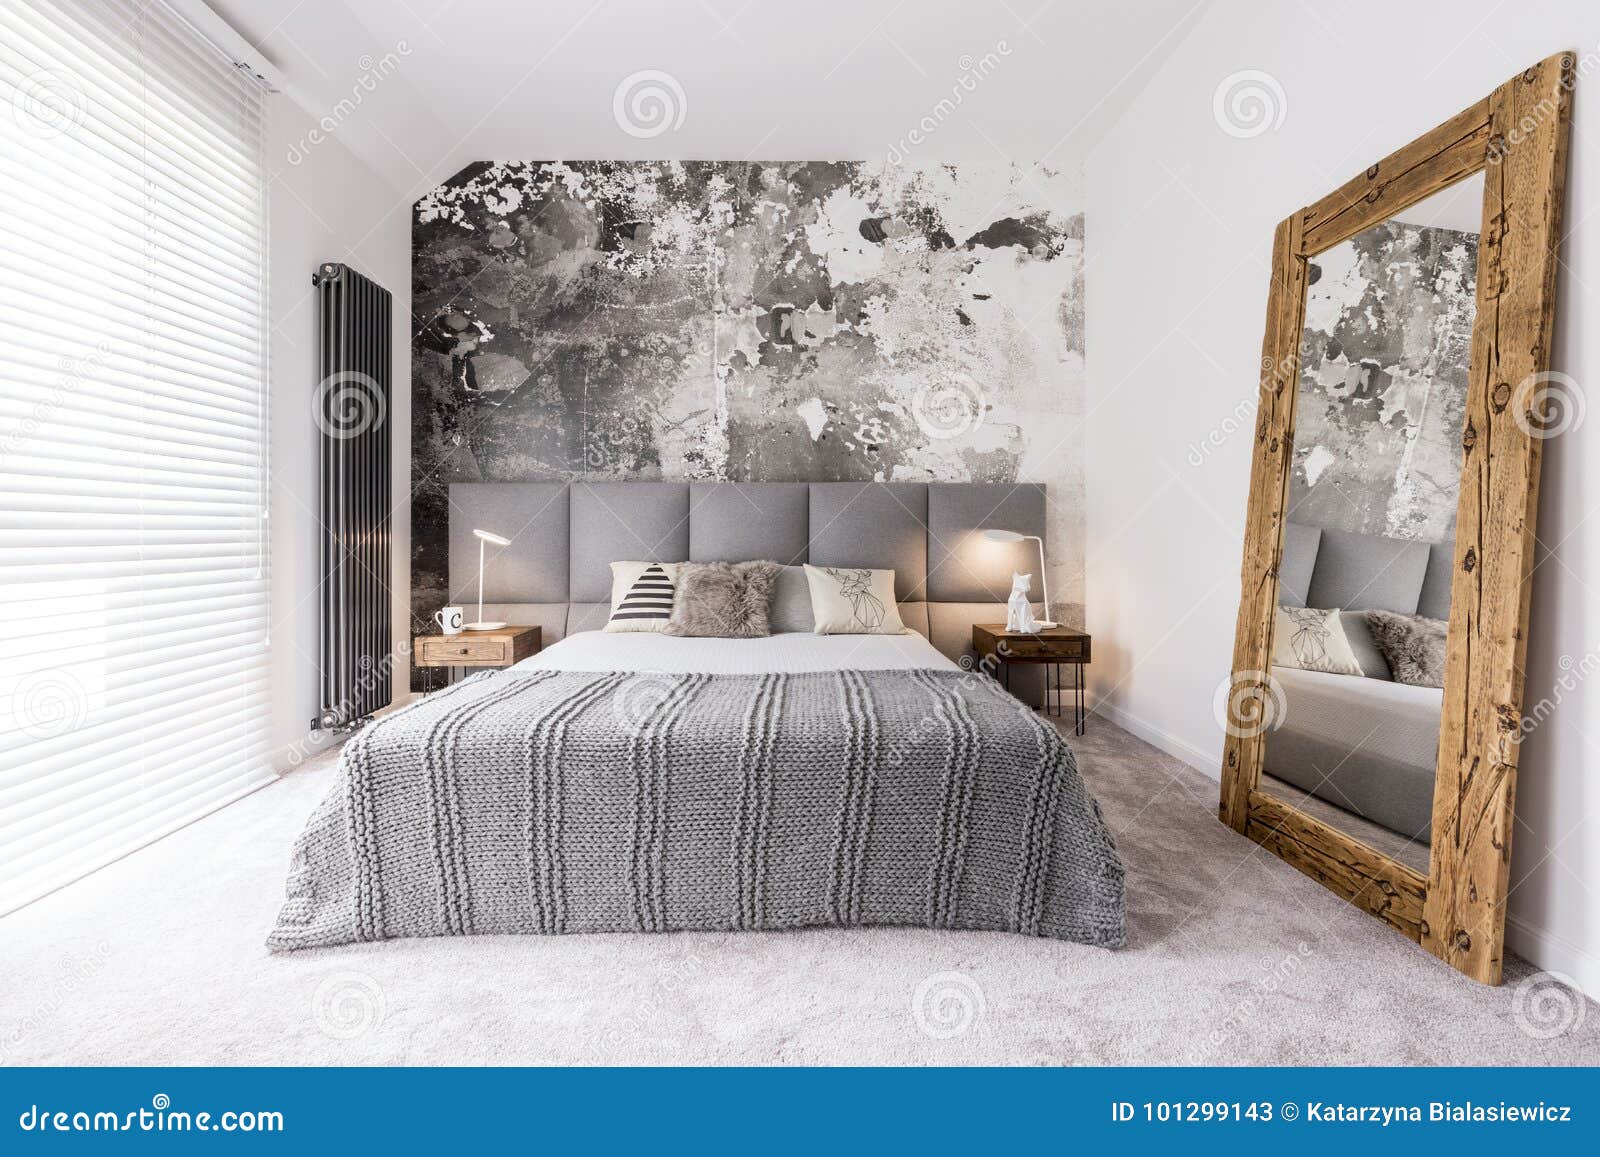 elegant, monochromatic bedroom